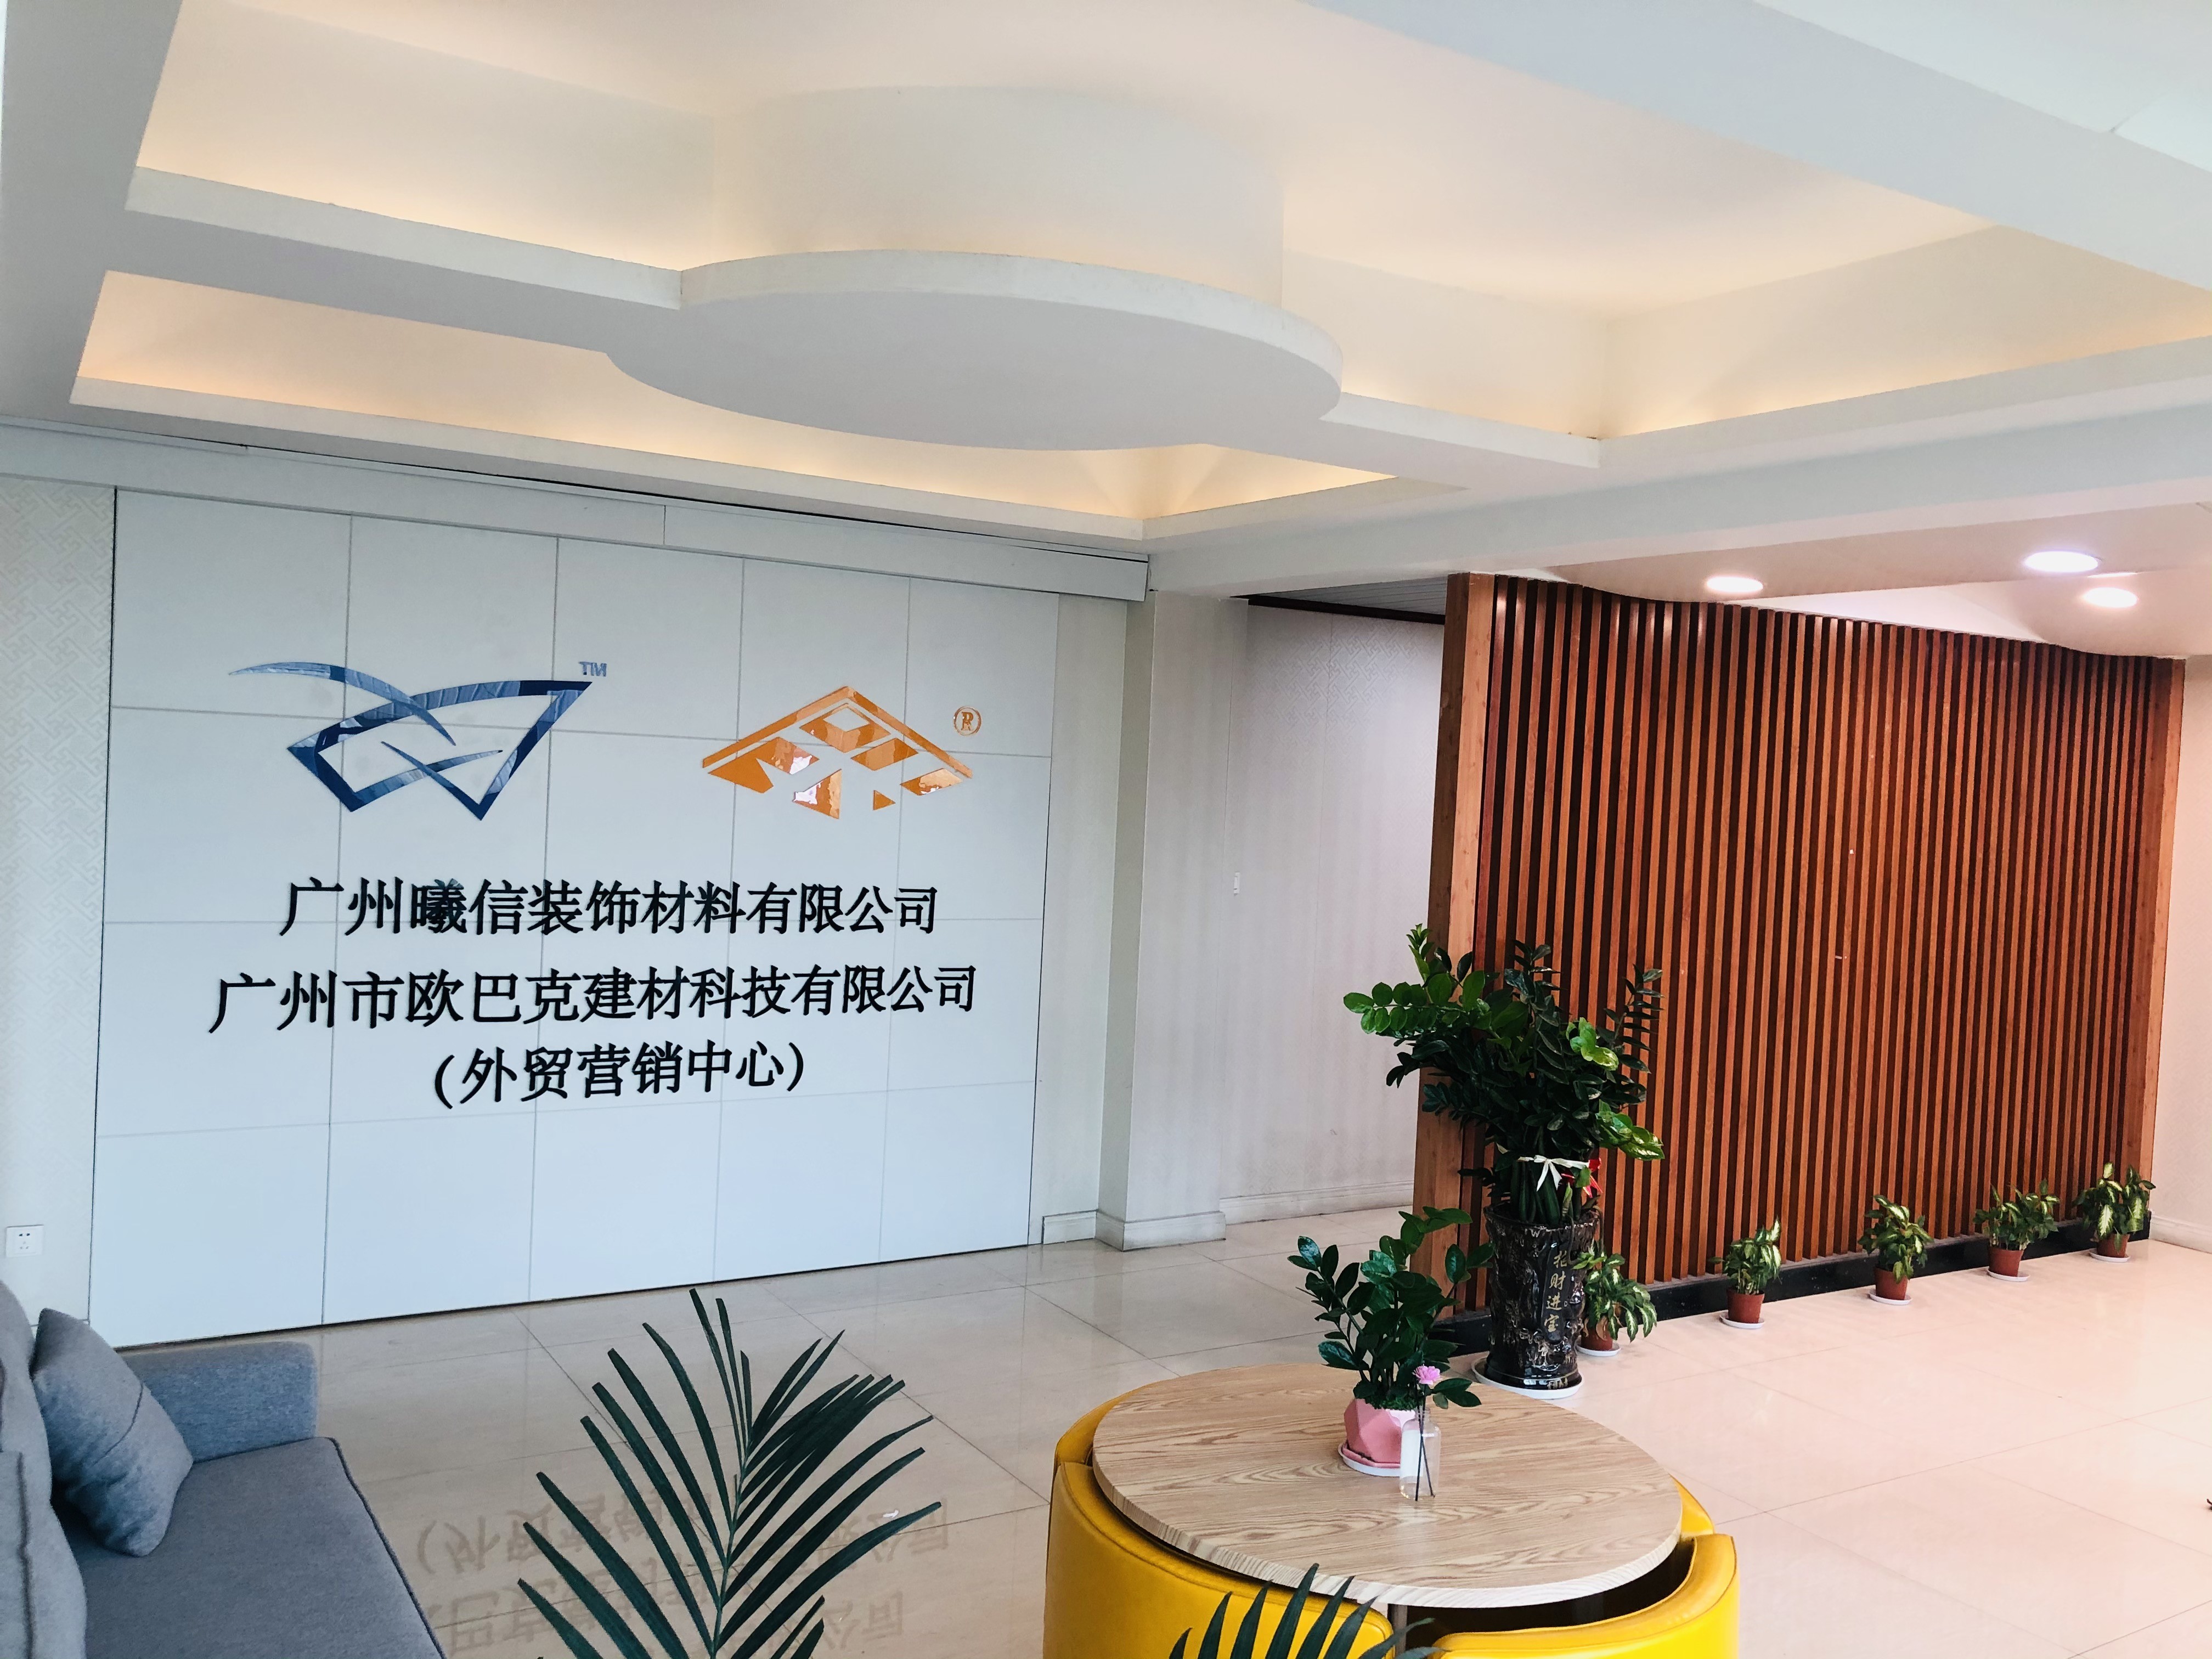 ประเทศจีน Guangzhou Season Decoration Materials Co., Ltd. รายละเอียด บริษัท